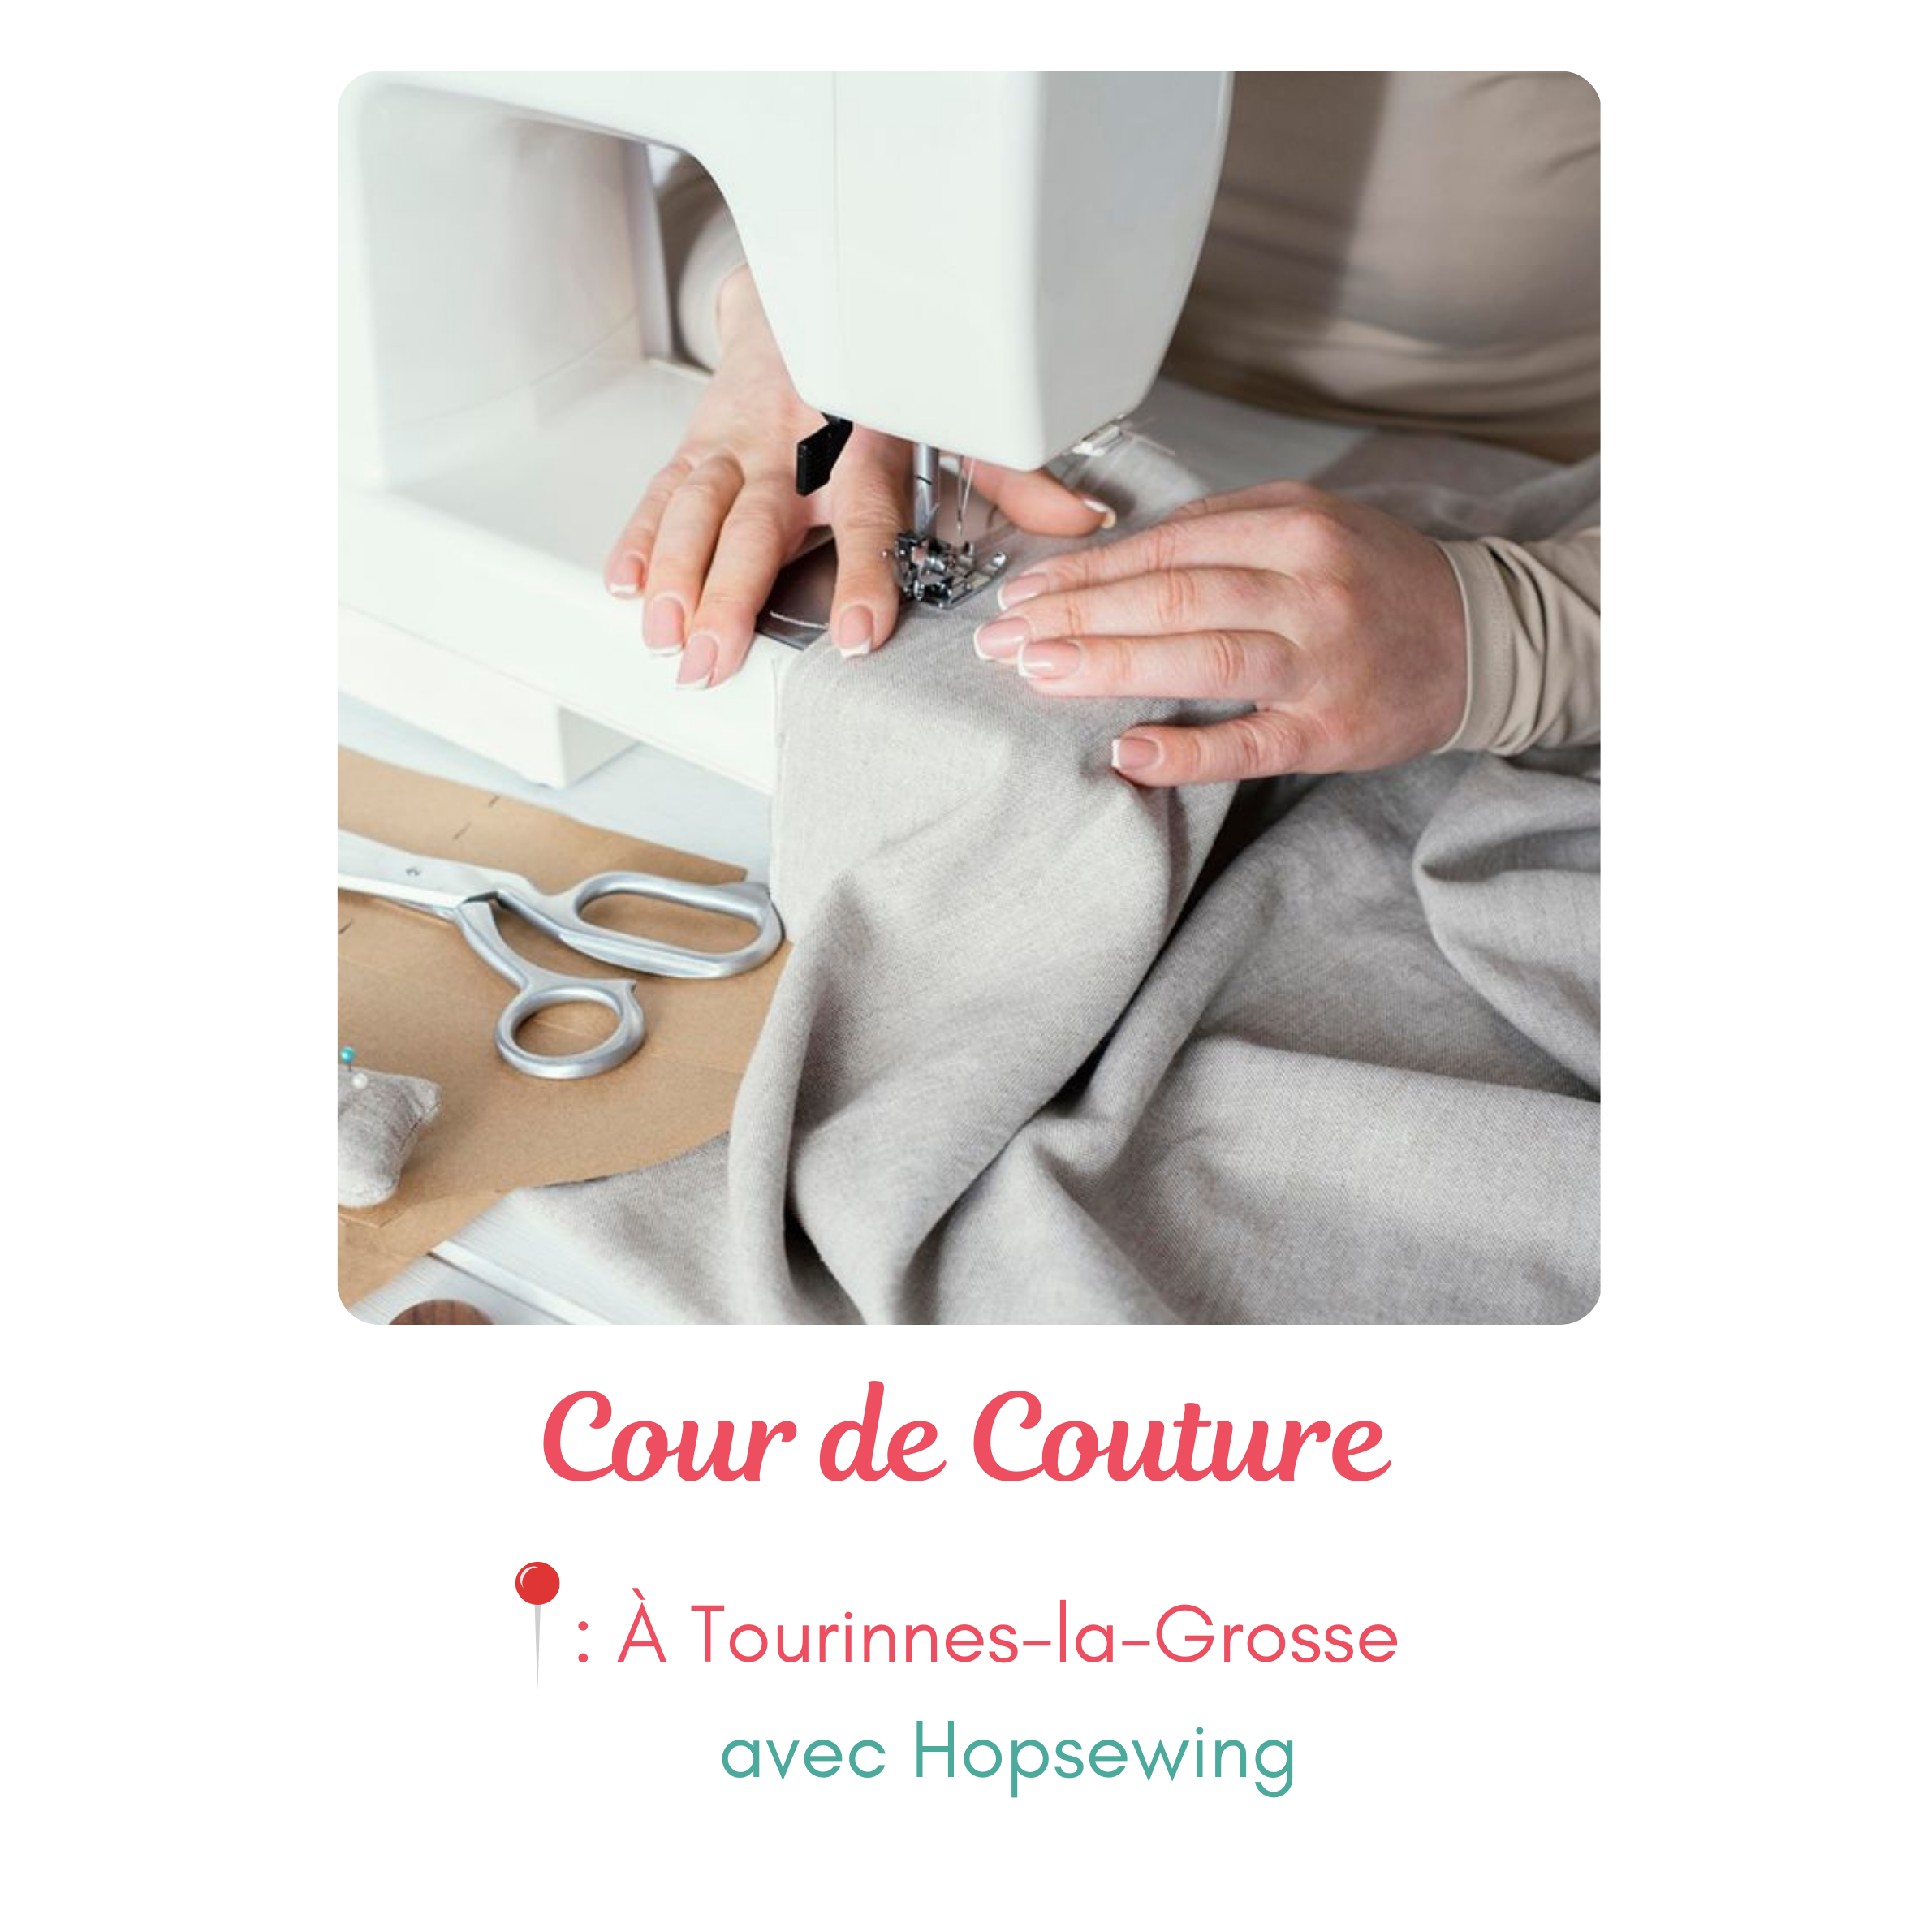 Cours de Couture avec&nbsp;Hopsewing à&nbsp;Tourinnes-la-Grosse